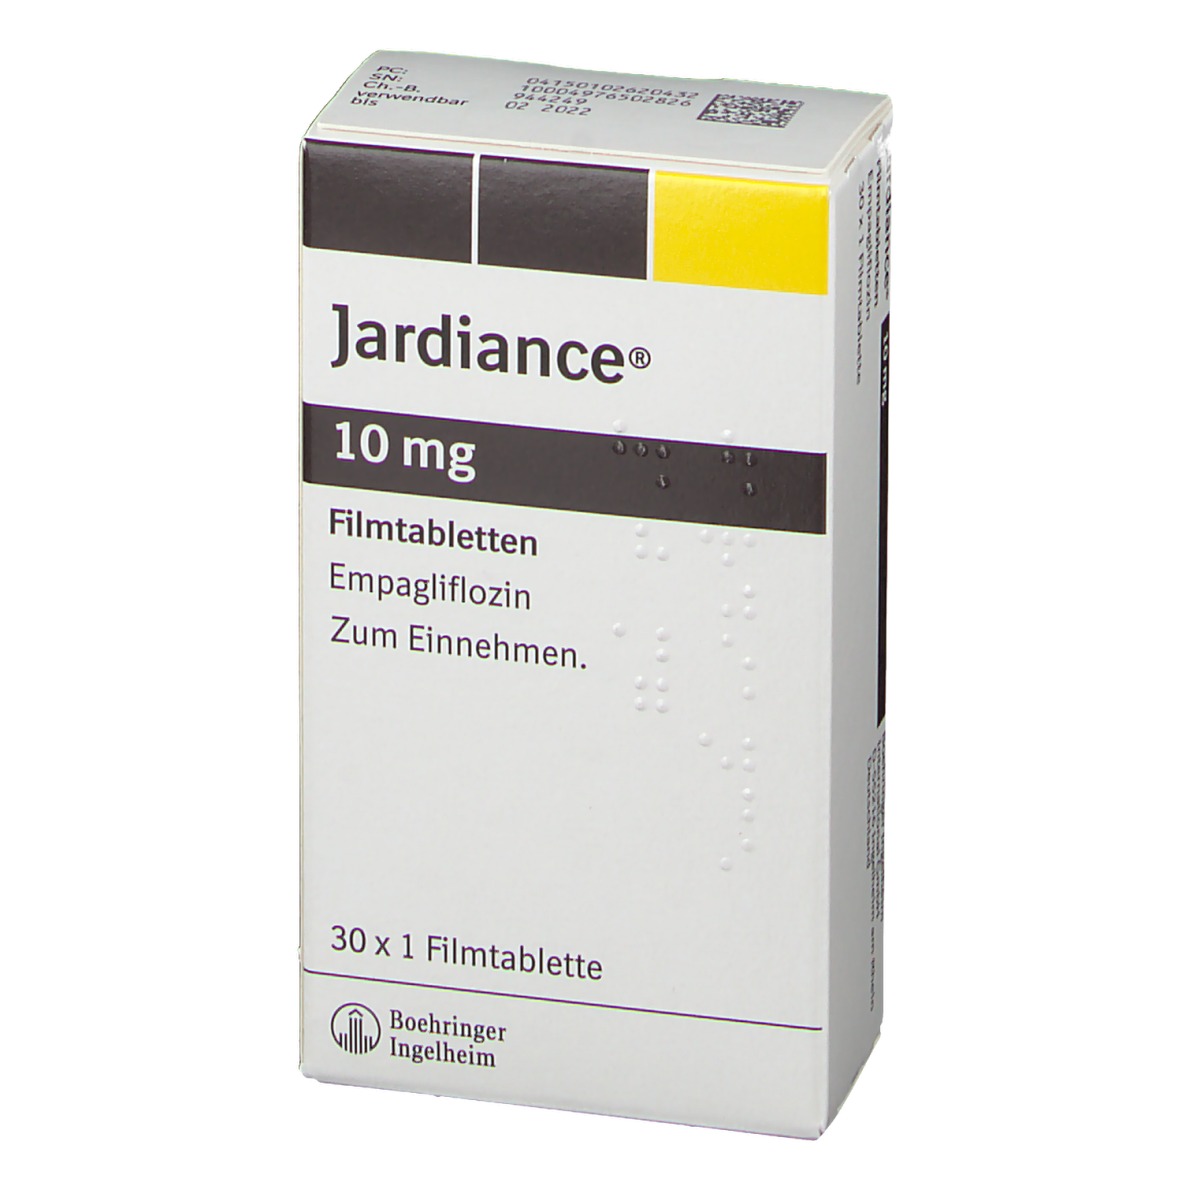 JARDIANCE 10 mg Filmtabletten 30 St - shop-apotheke.com